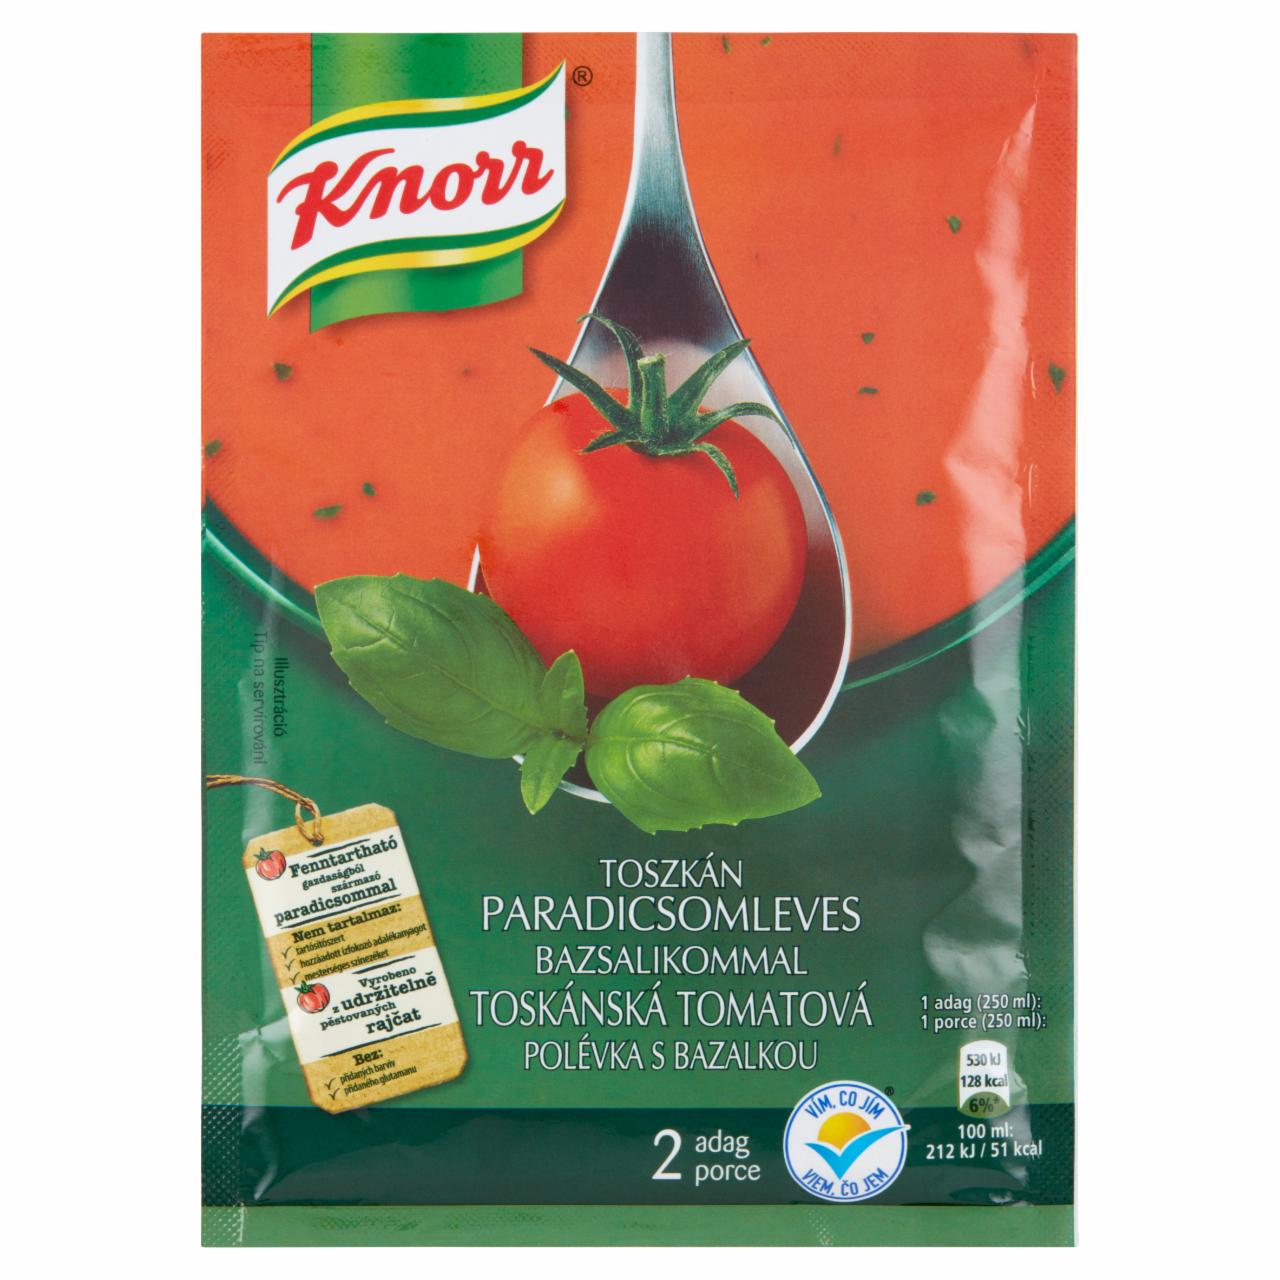 Képek - Knorr toszkán paradicsomleves bazsalikommal 66 g